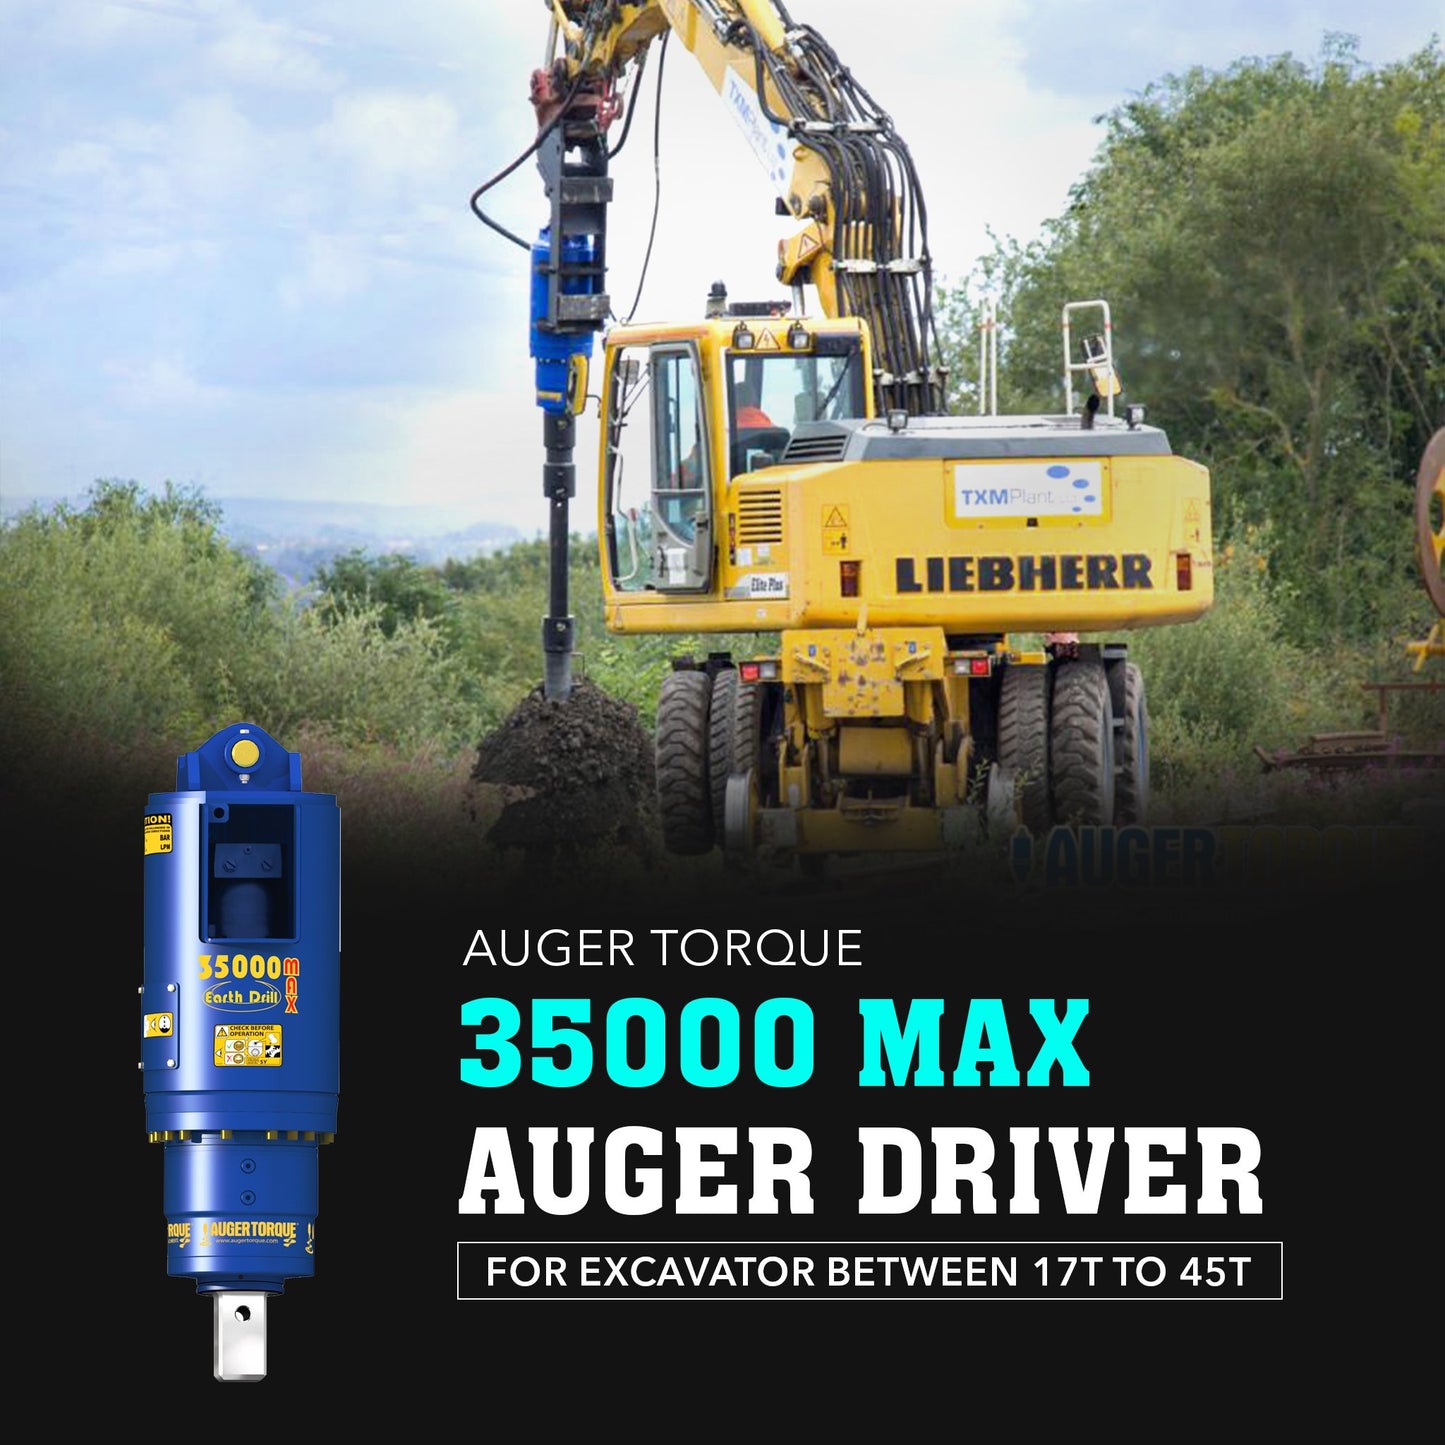 Auger Torque 35000 Max Auger Drive - Attachment Warehouse